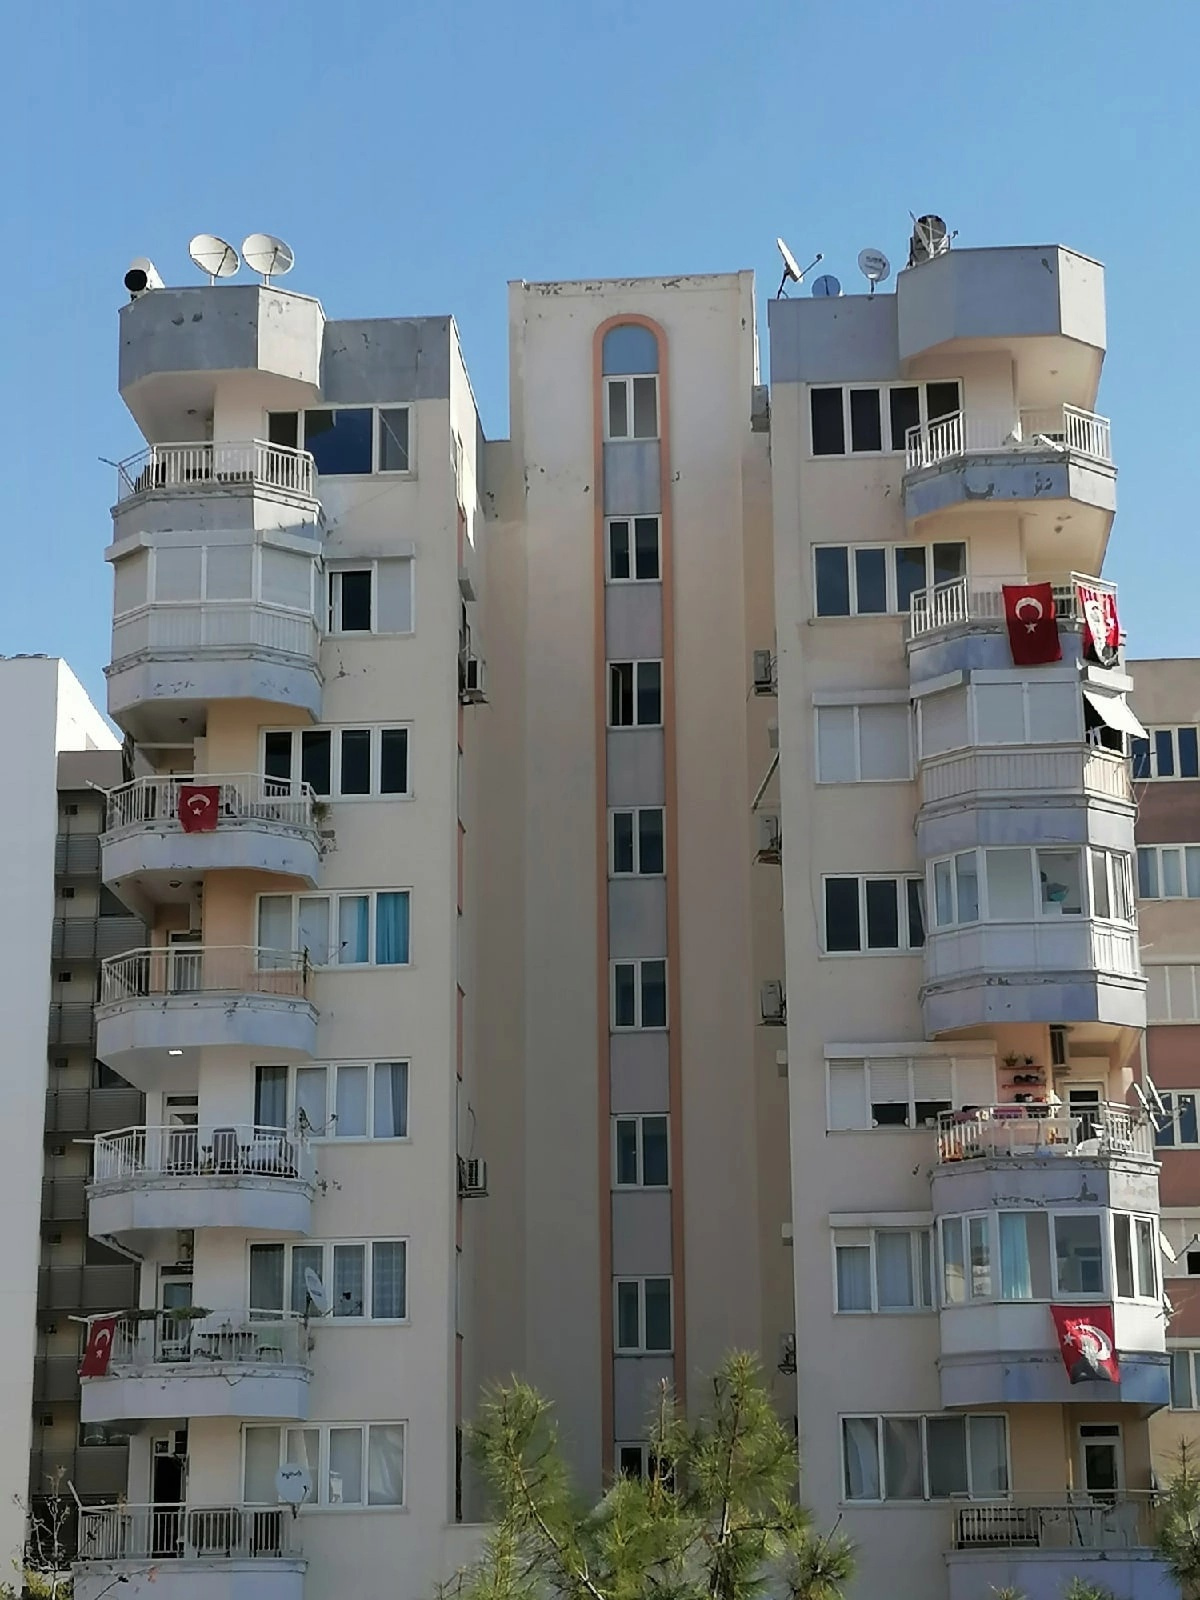 Так выглядит обычный многоэтажный дом в Турции